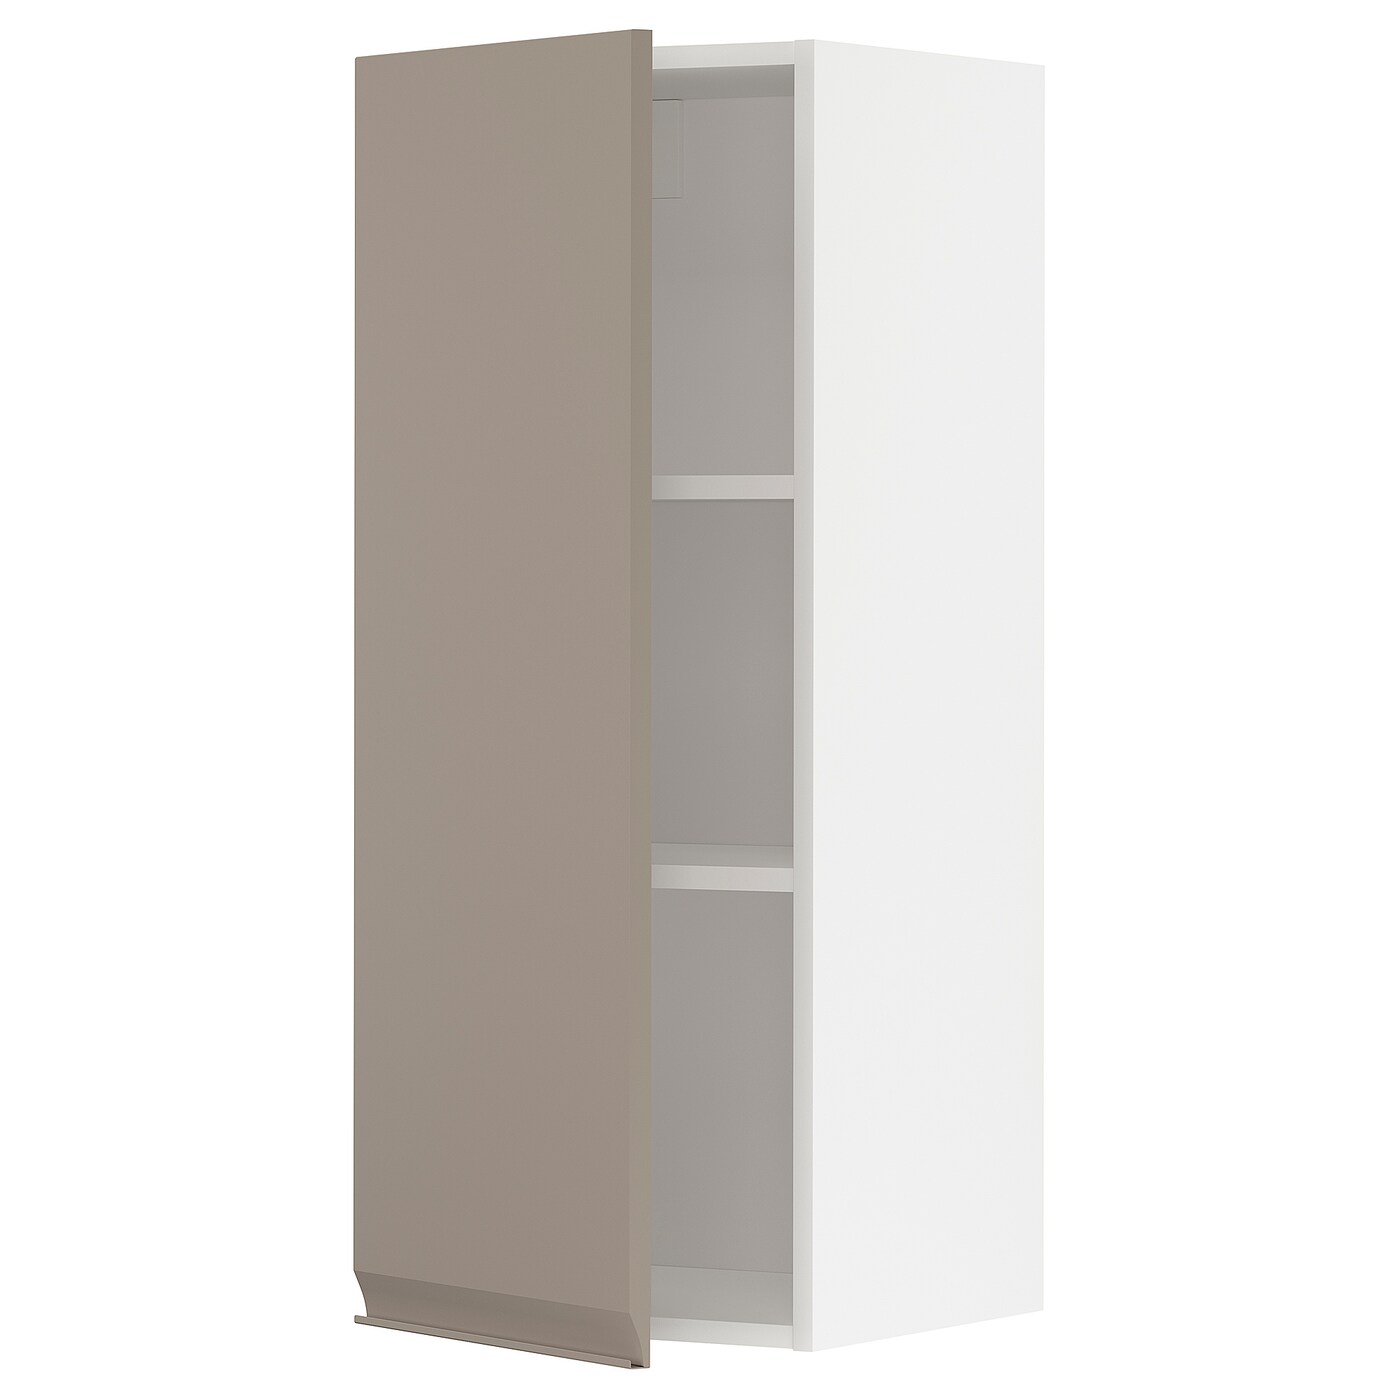 Навесной шкаф с полкой - METOD IKEA/ МЕТОД ИКЕА, 40х100 см, белый/светло-коричневый